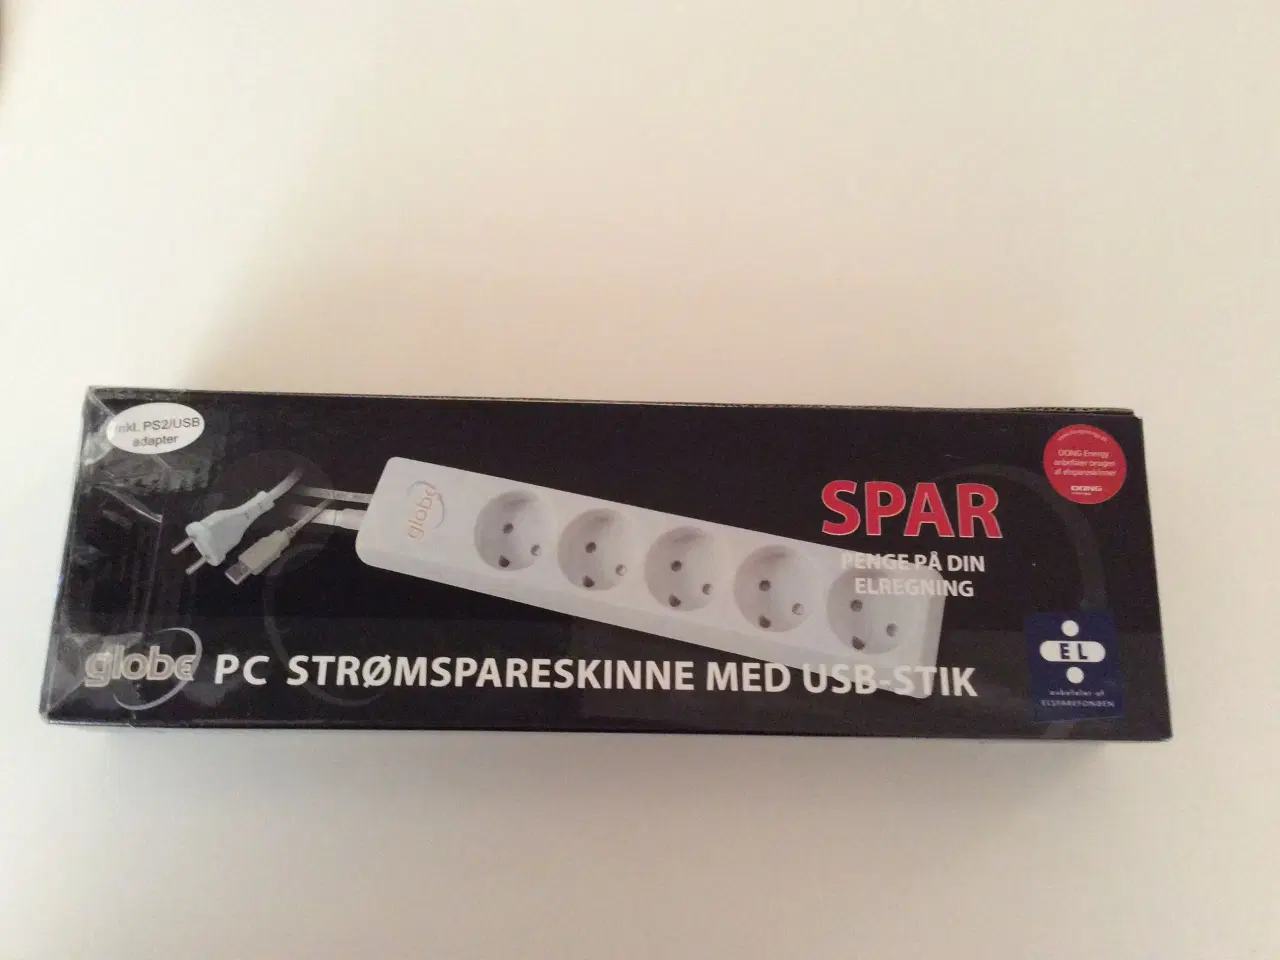 Billede 1 - PC Strømspareskinne med USB-stik, Globe 90 kr.